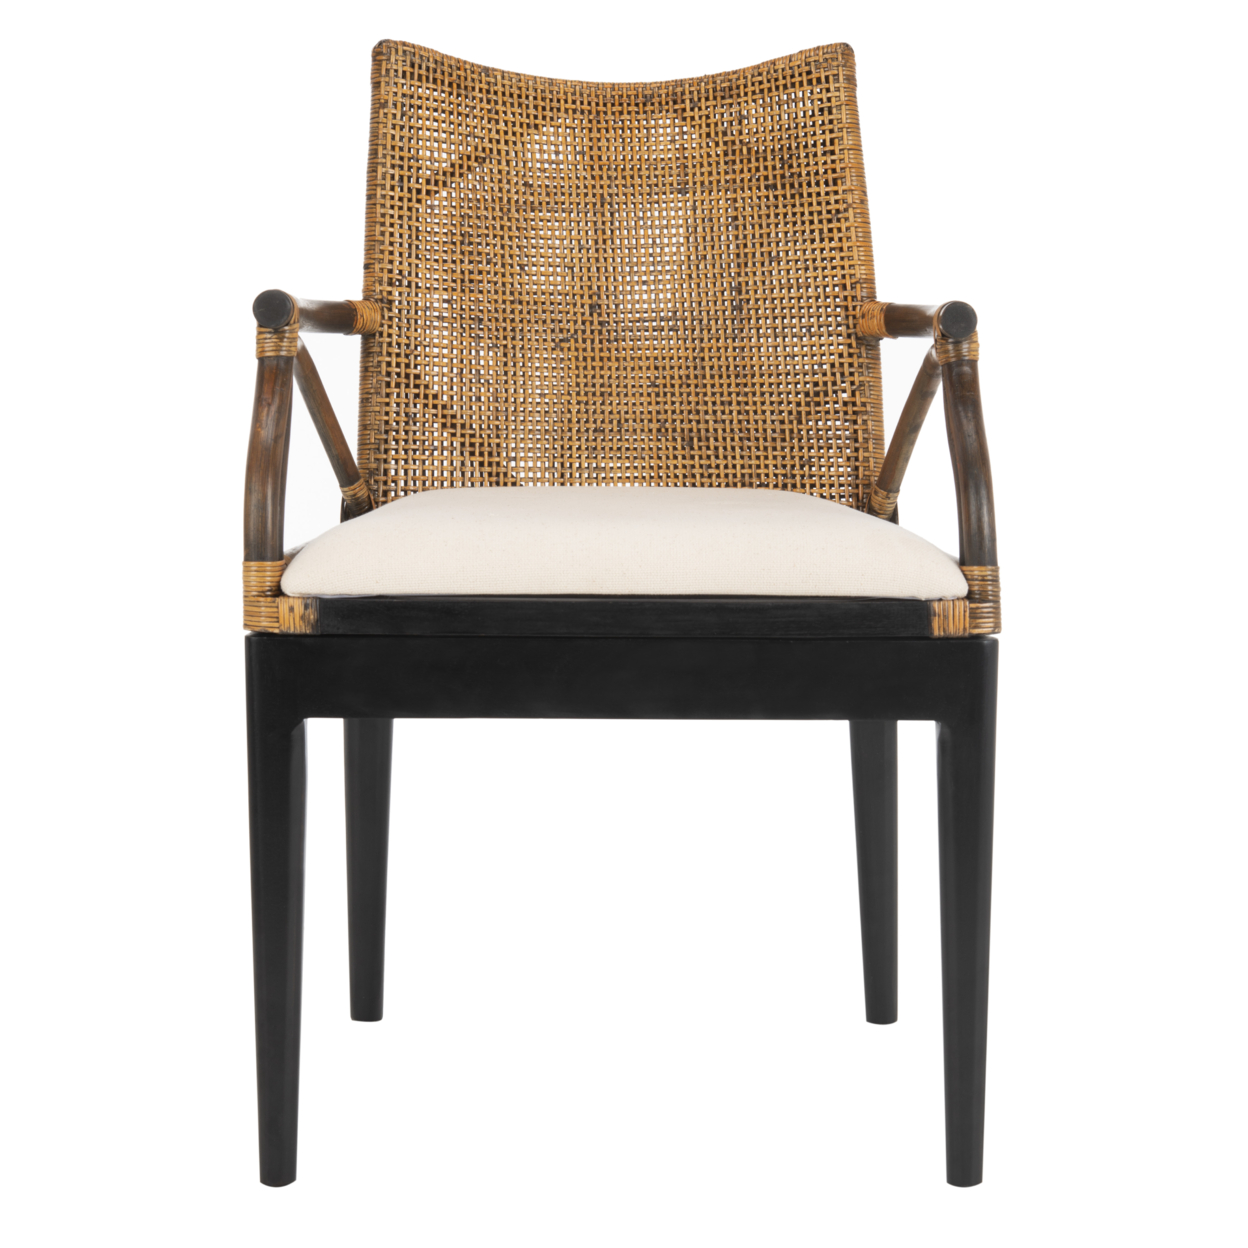 SAFAVIEH Gianni Arm Chair Brown / Black